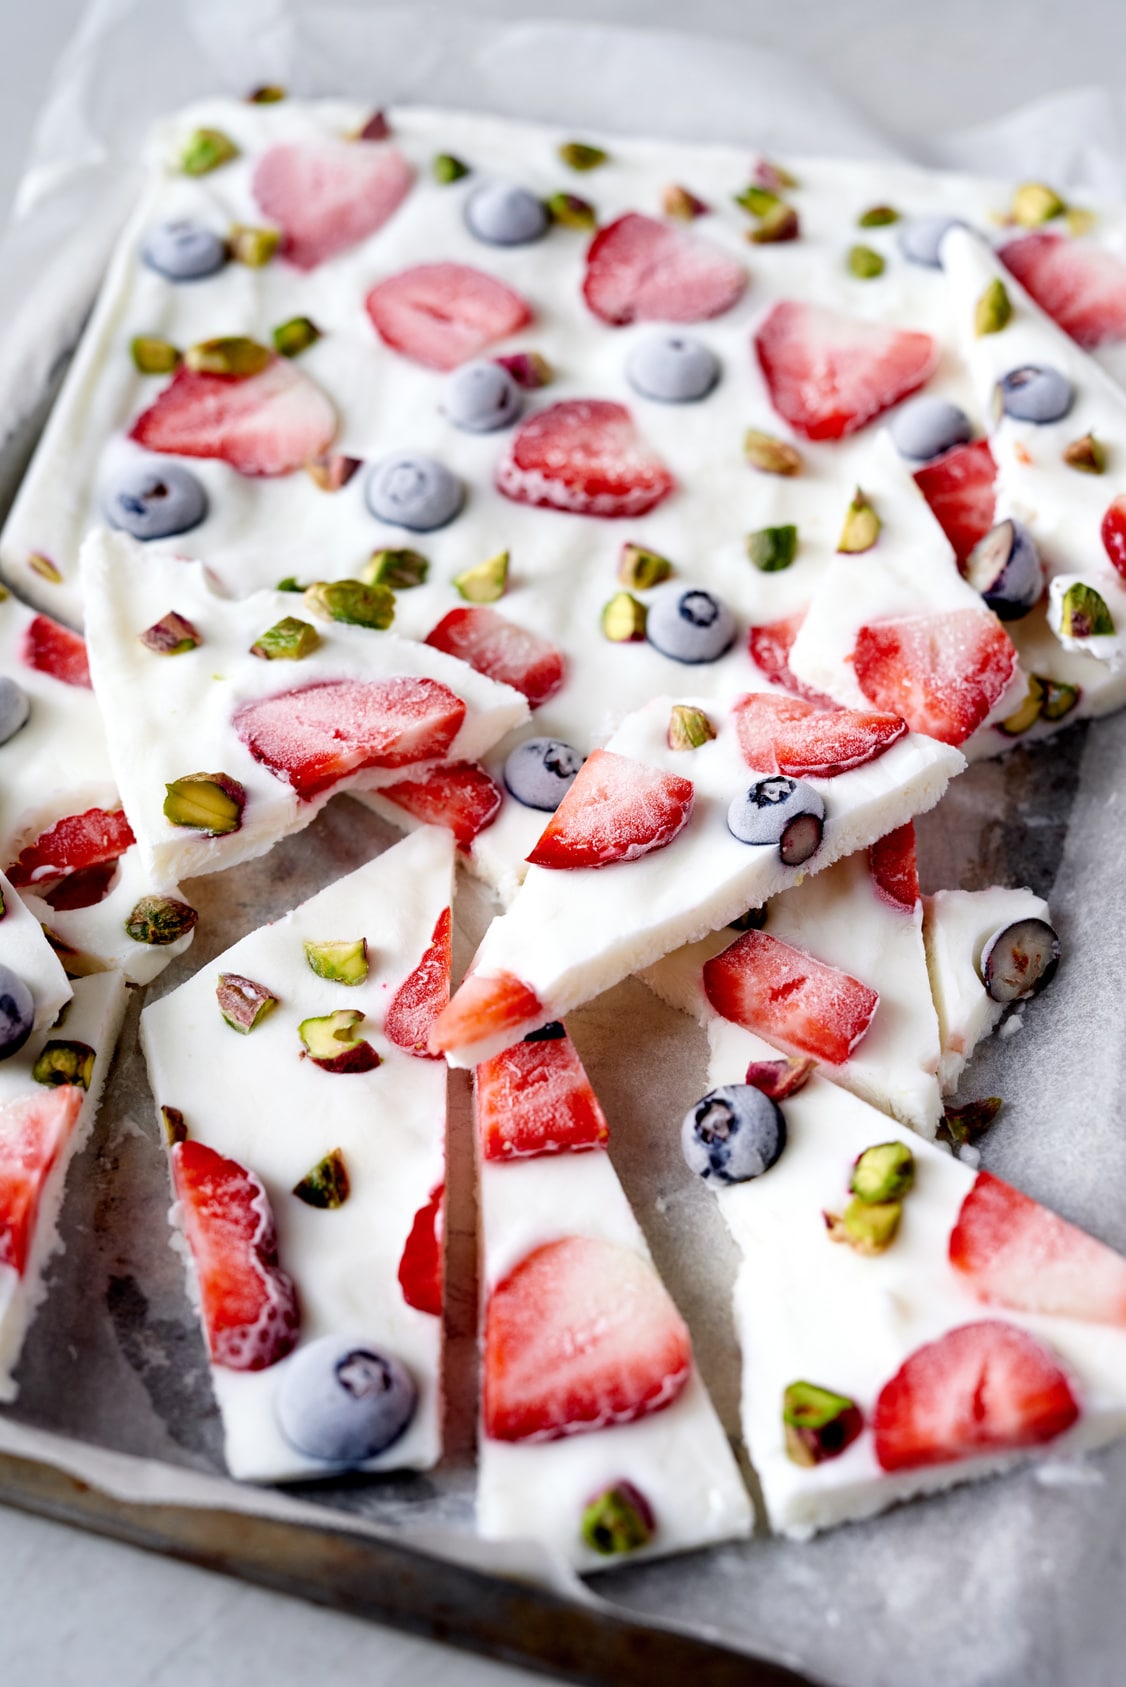 frozen yogurt bark broken into pieces with strawberries, blueberries, and pistachios